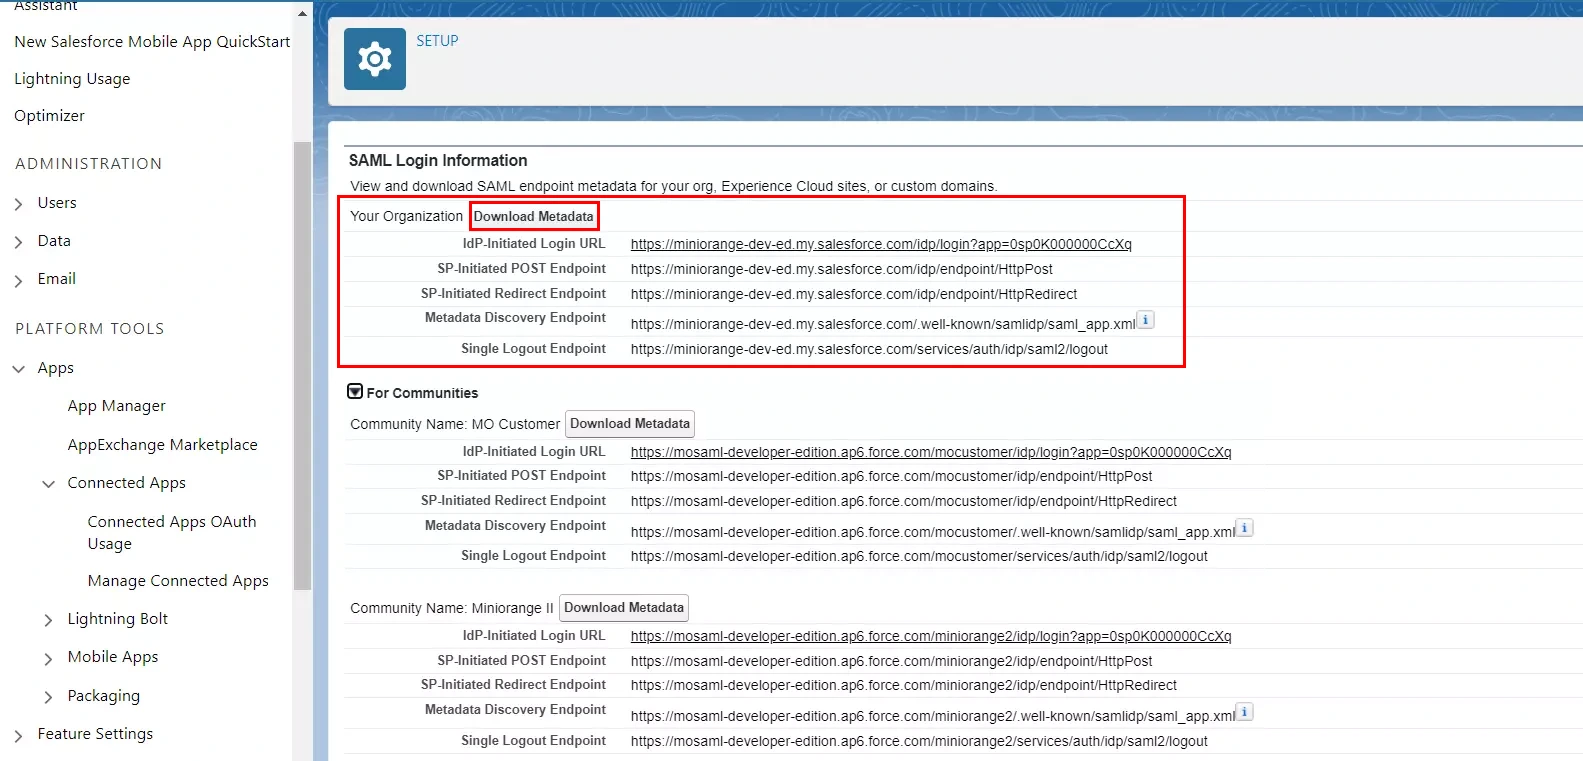 Authentification unique SAML (SSO) Joomla à l'aide du fournisseur d'identité Salesforce, téléchargement des métadonnées des fournisseurs d'identité